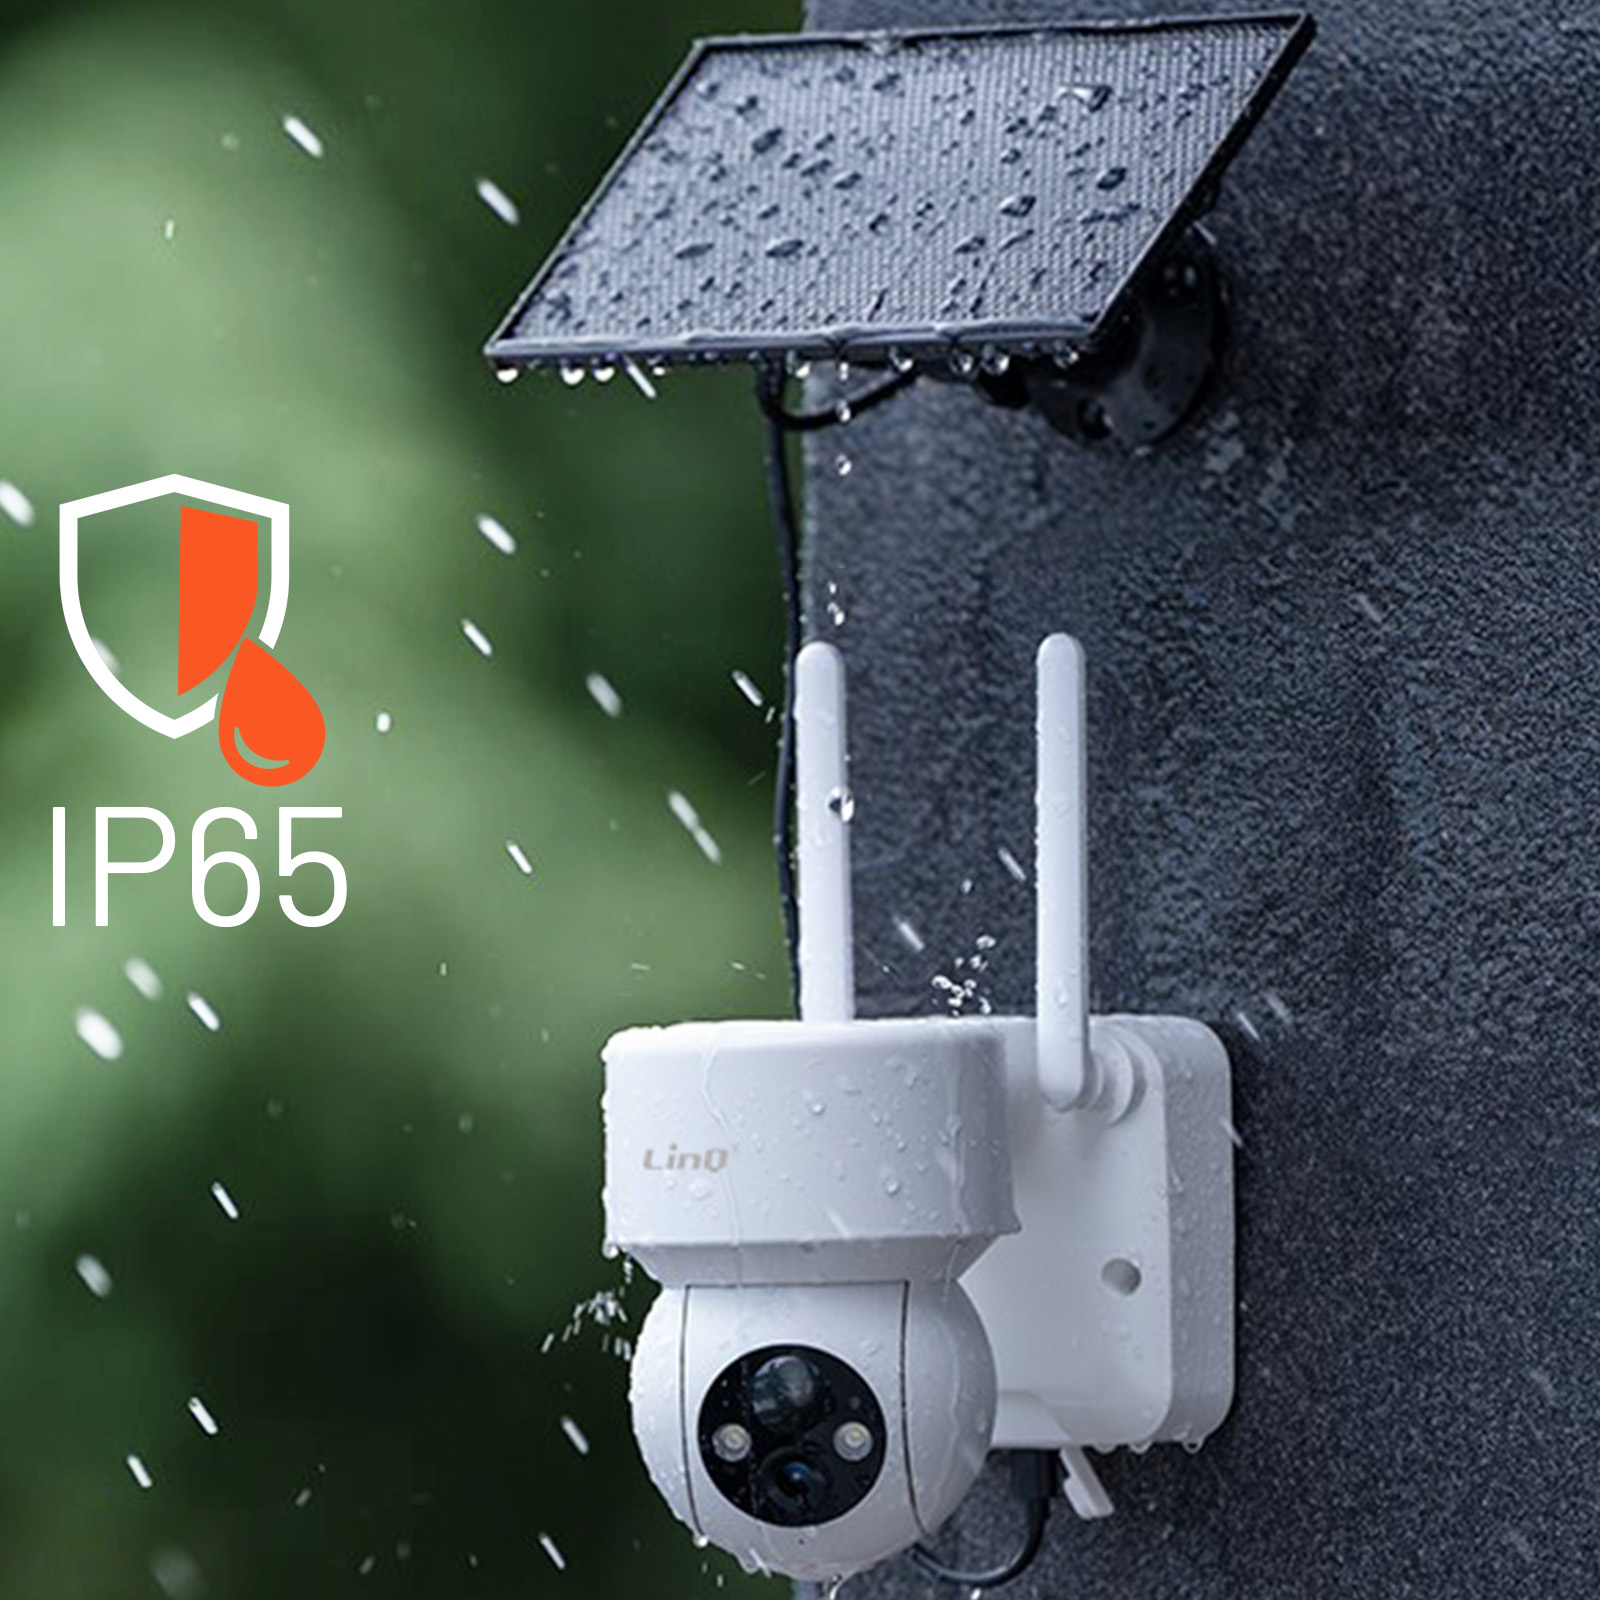 Caméra de surveillance sans fil Full HD 1080p, Étanche IP65, LinQ